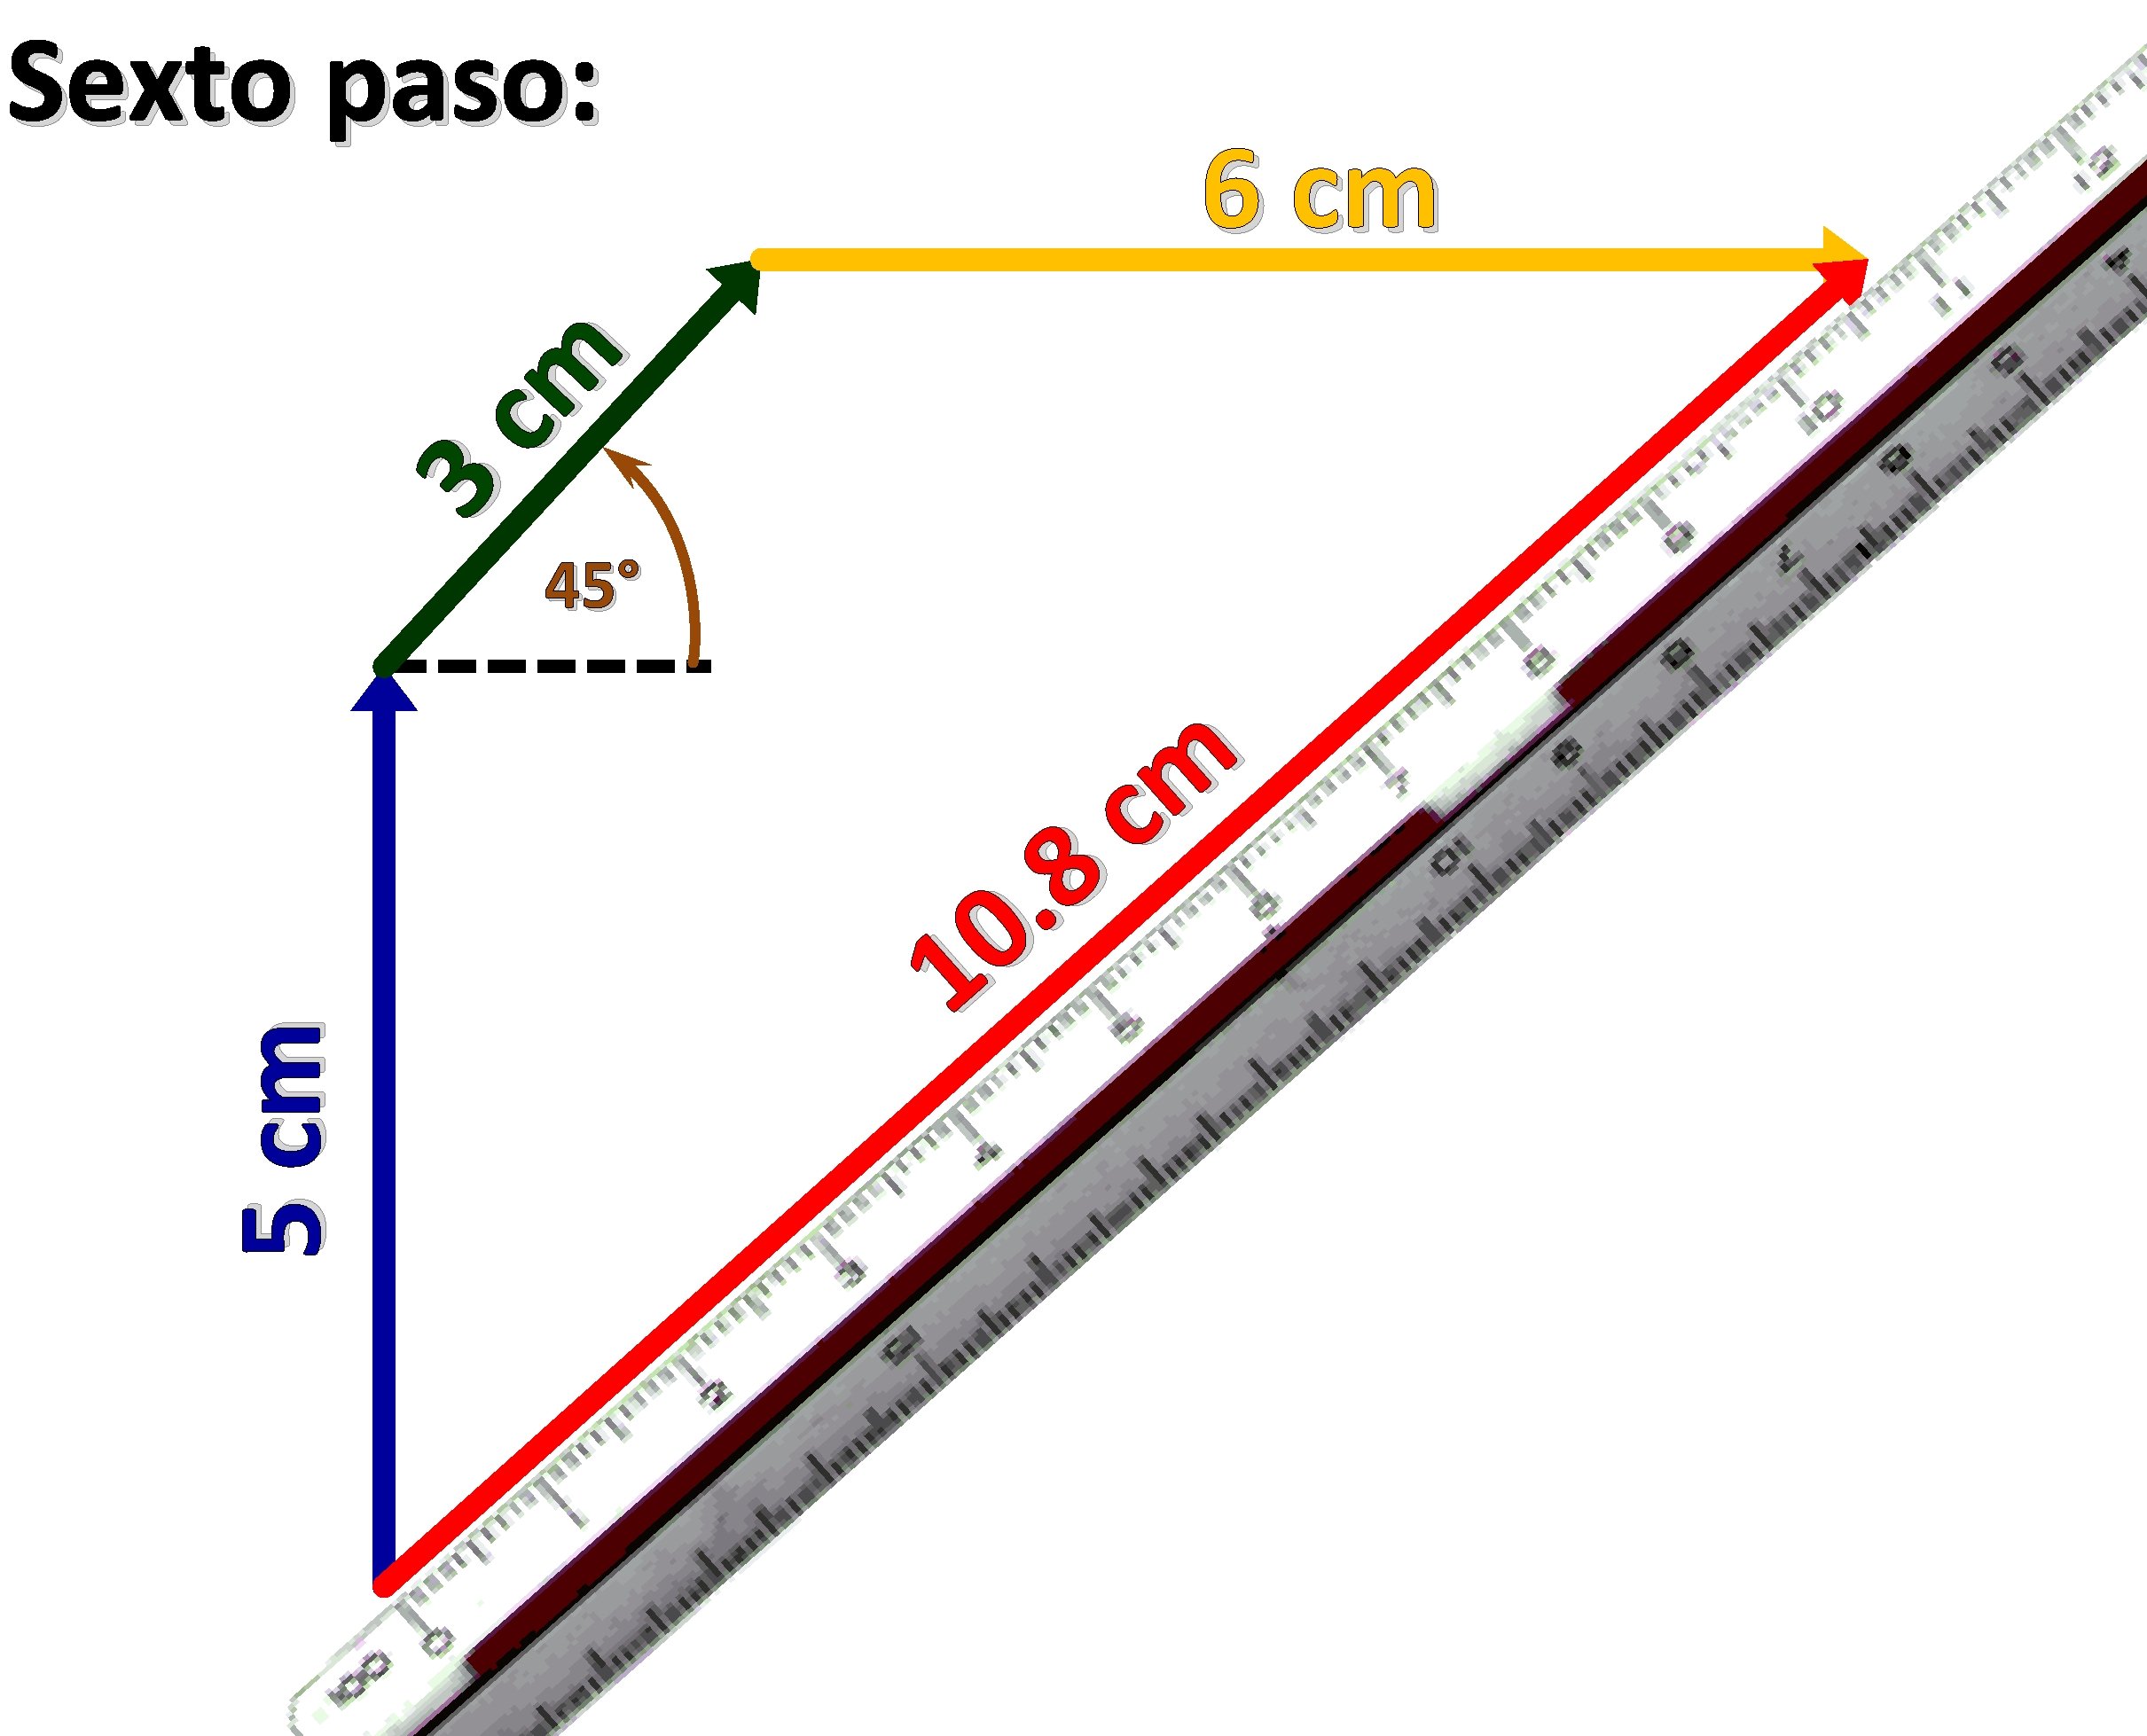 6 cm 3 cm Sexto paso: 5 cm 45° m c 8. 0 1